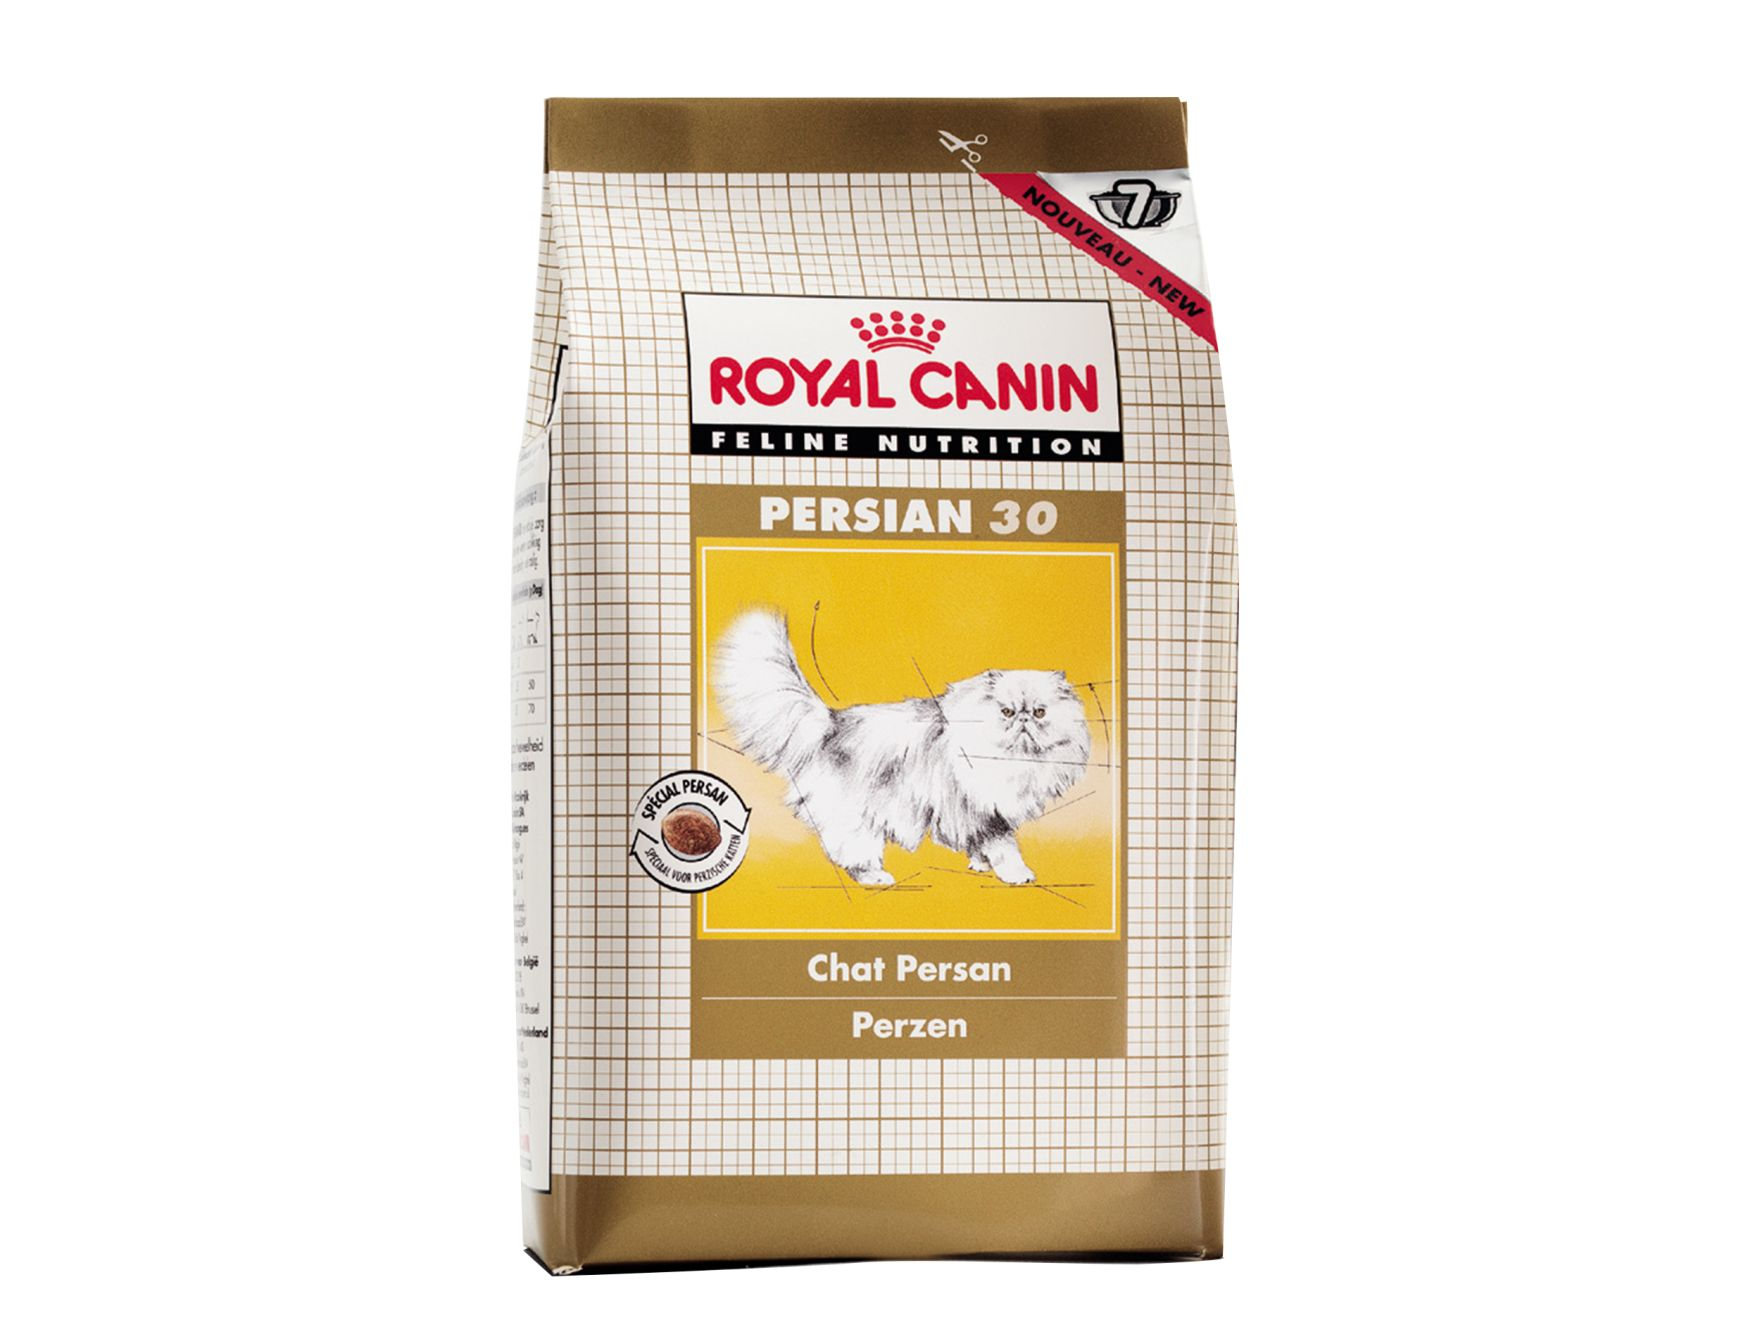 Packshot de produits Royal Canin pour persan